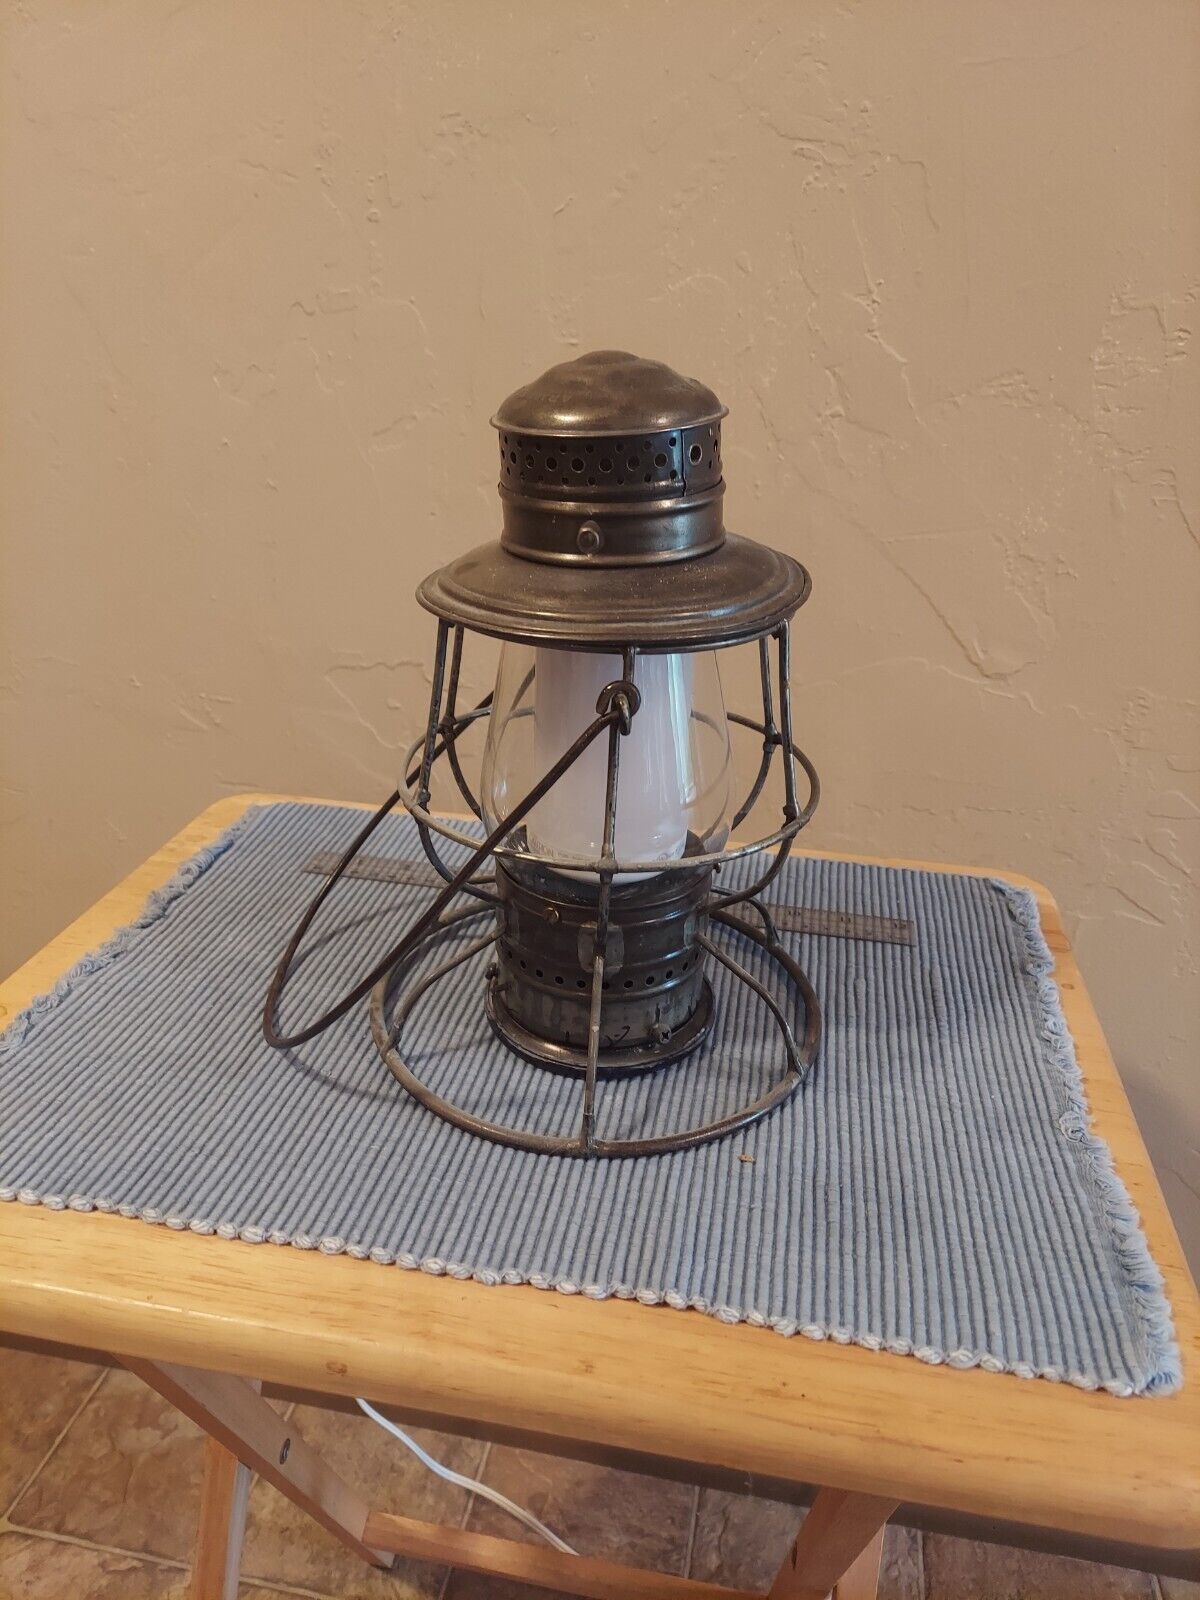 Armspear Manu'f'g Vintage Railroad Lantern Retrofitted W/Led FlickerFlame Bulb. 